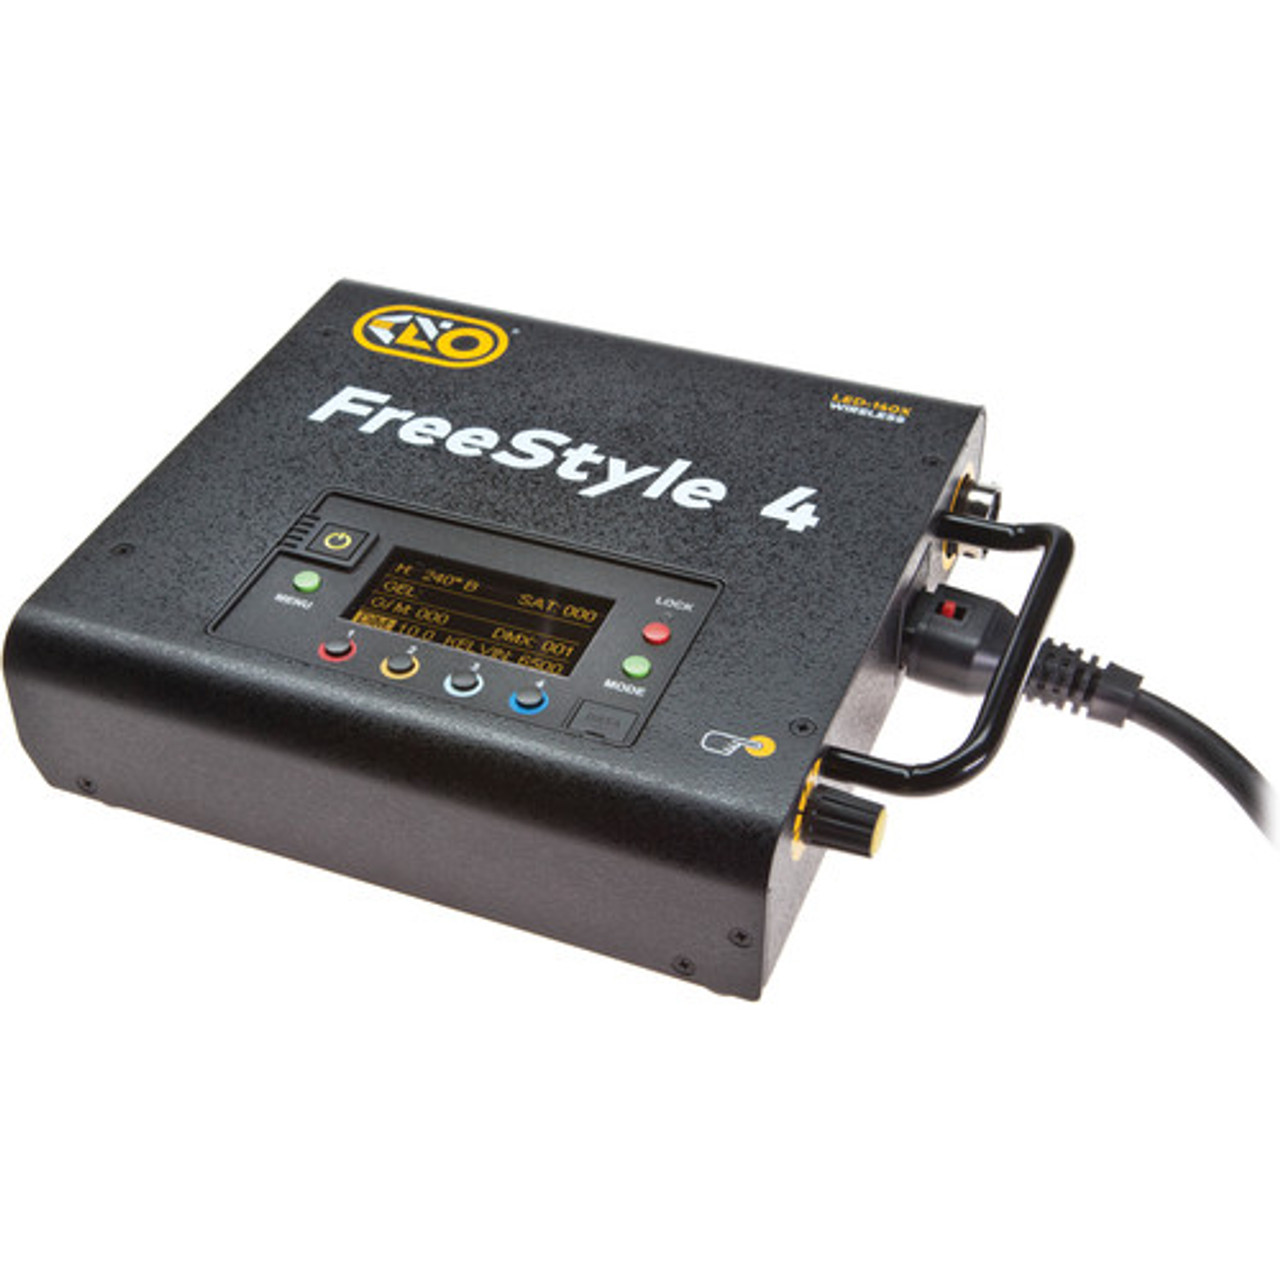 Kino Flo FreeStyle 140 LED DMX Controller for FreeStyle T44 Bulbs, (120 VAC Cord) (LED-140X-120U)